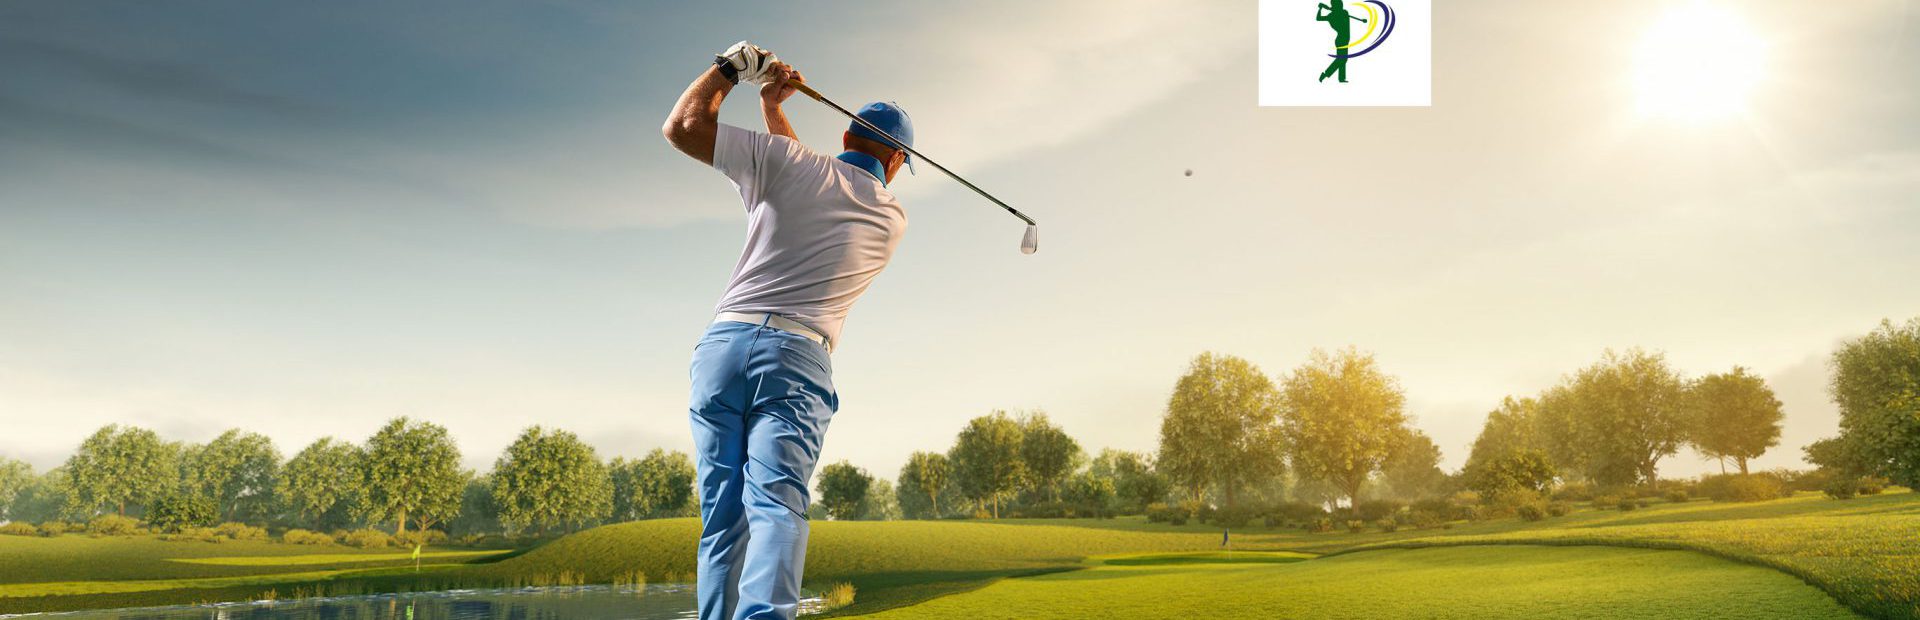 Nieuwe website voor Golfbaan Ter Specke